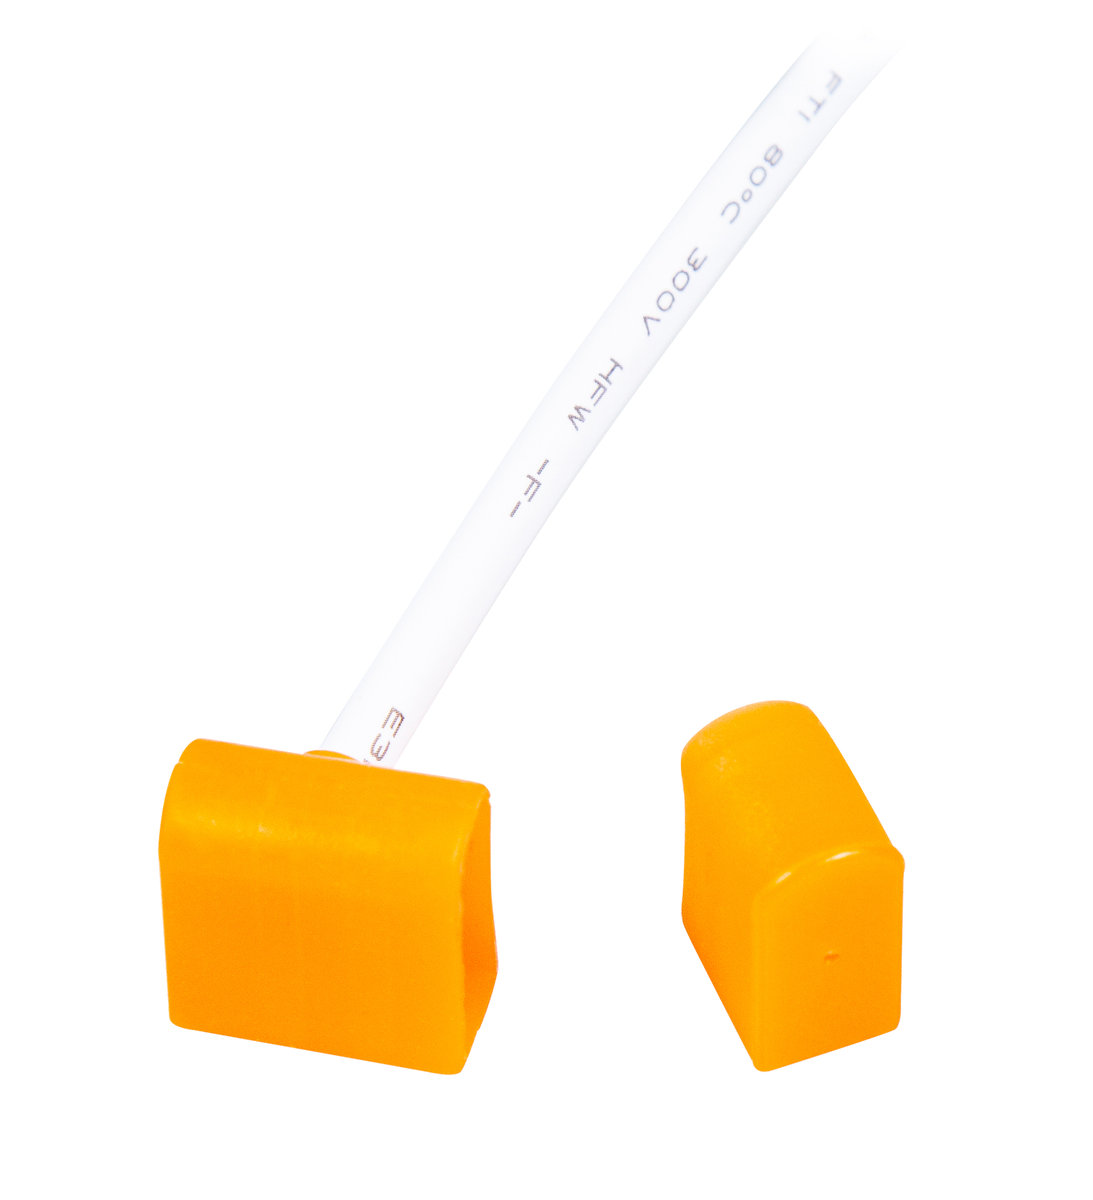 Przyłącze zasilające do BERGMEN Neon Flex HXR One / pomarańczowe / końcówka zasilająca z wyjściem bocznym + przewód 30 cm + zaślepka